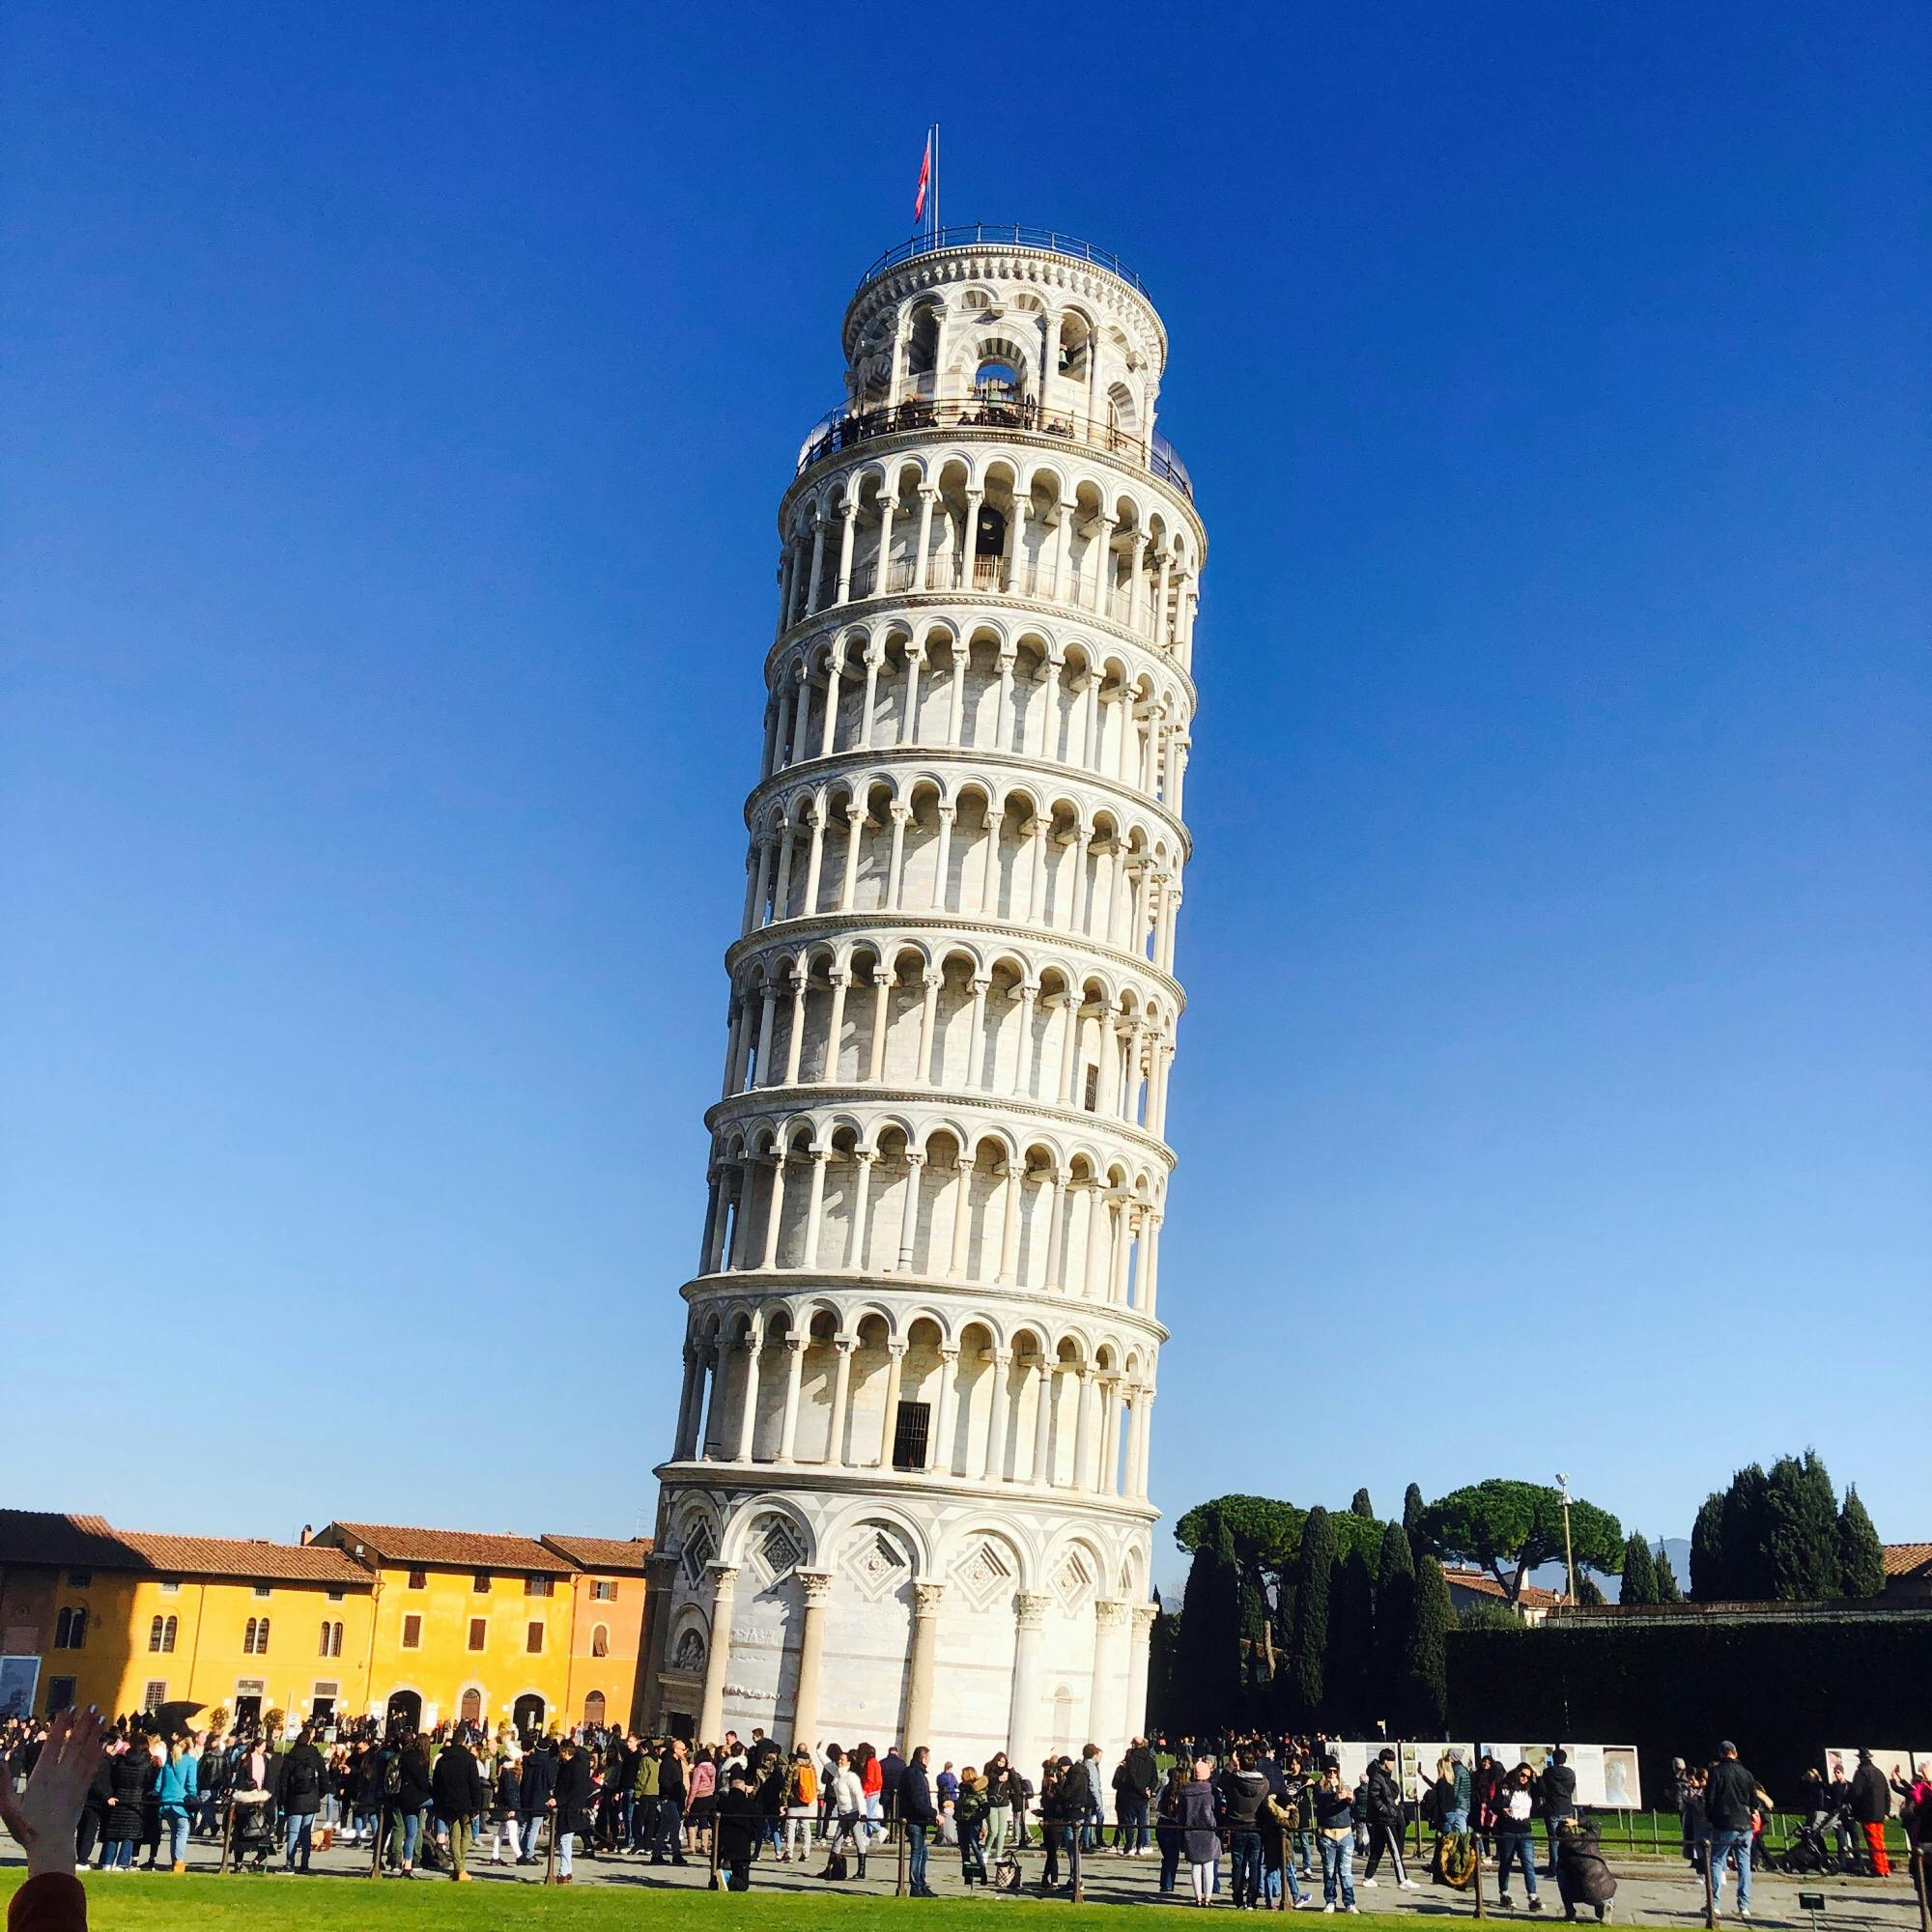 ピサの斜塔 鐘楼 Torre Di Pisa の投稿写真 感想 みどころ ピサの斜塔 イタリア ピサの斜塔 トリップノート